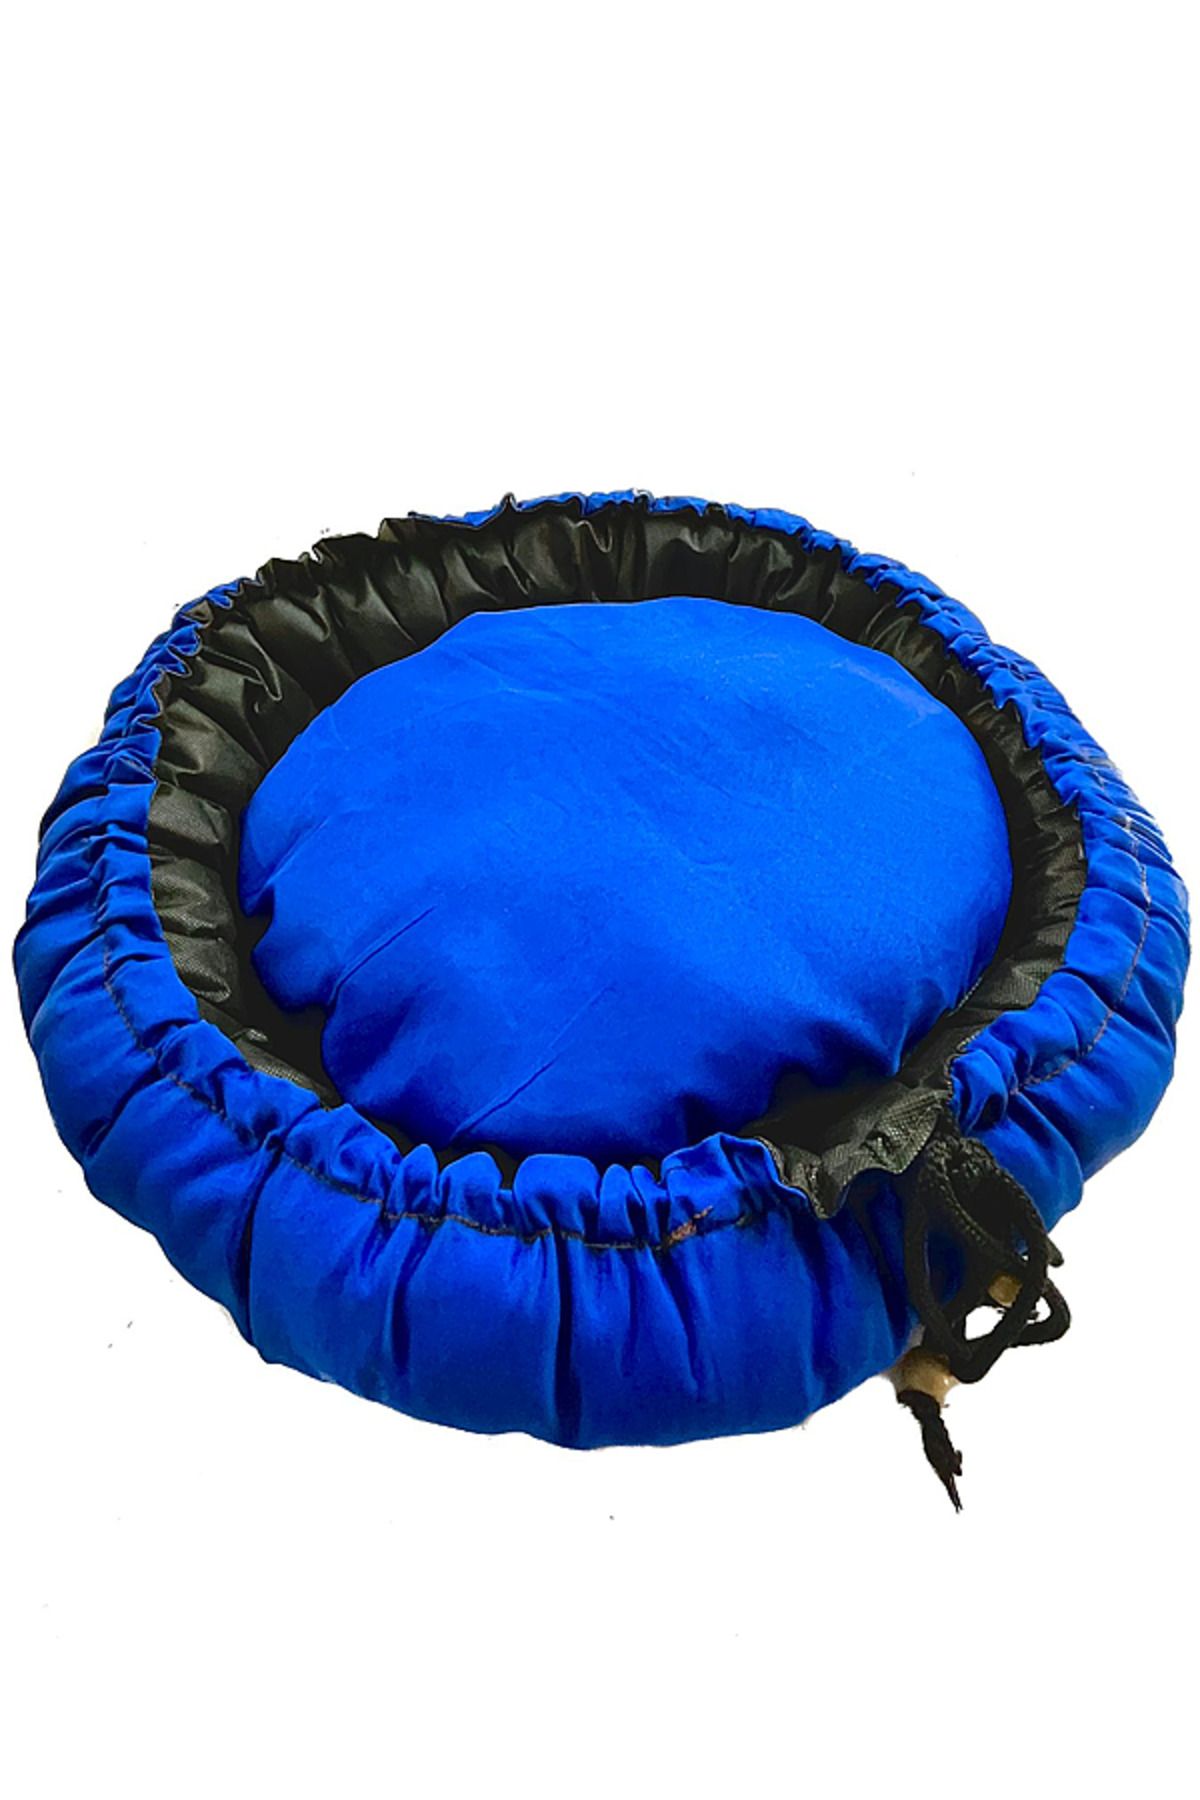 Kamataş Pedli Kedi Köpek Yatağı, Saks Mavi, 65 cm., İspanyol Model